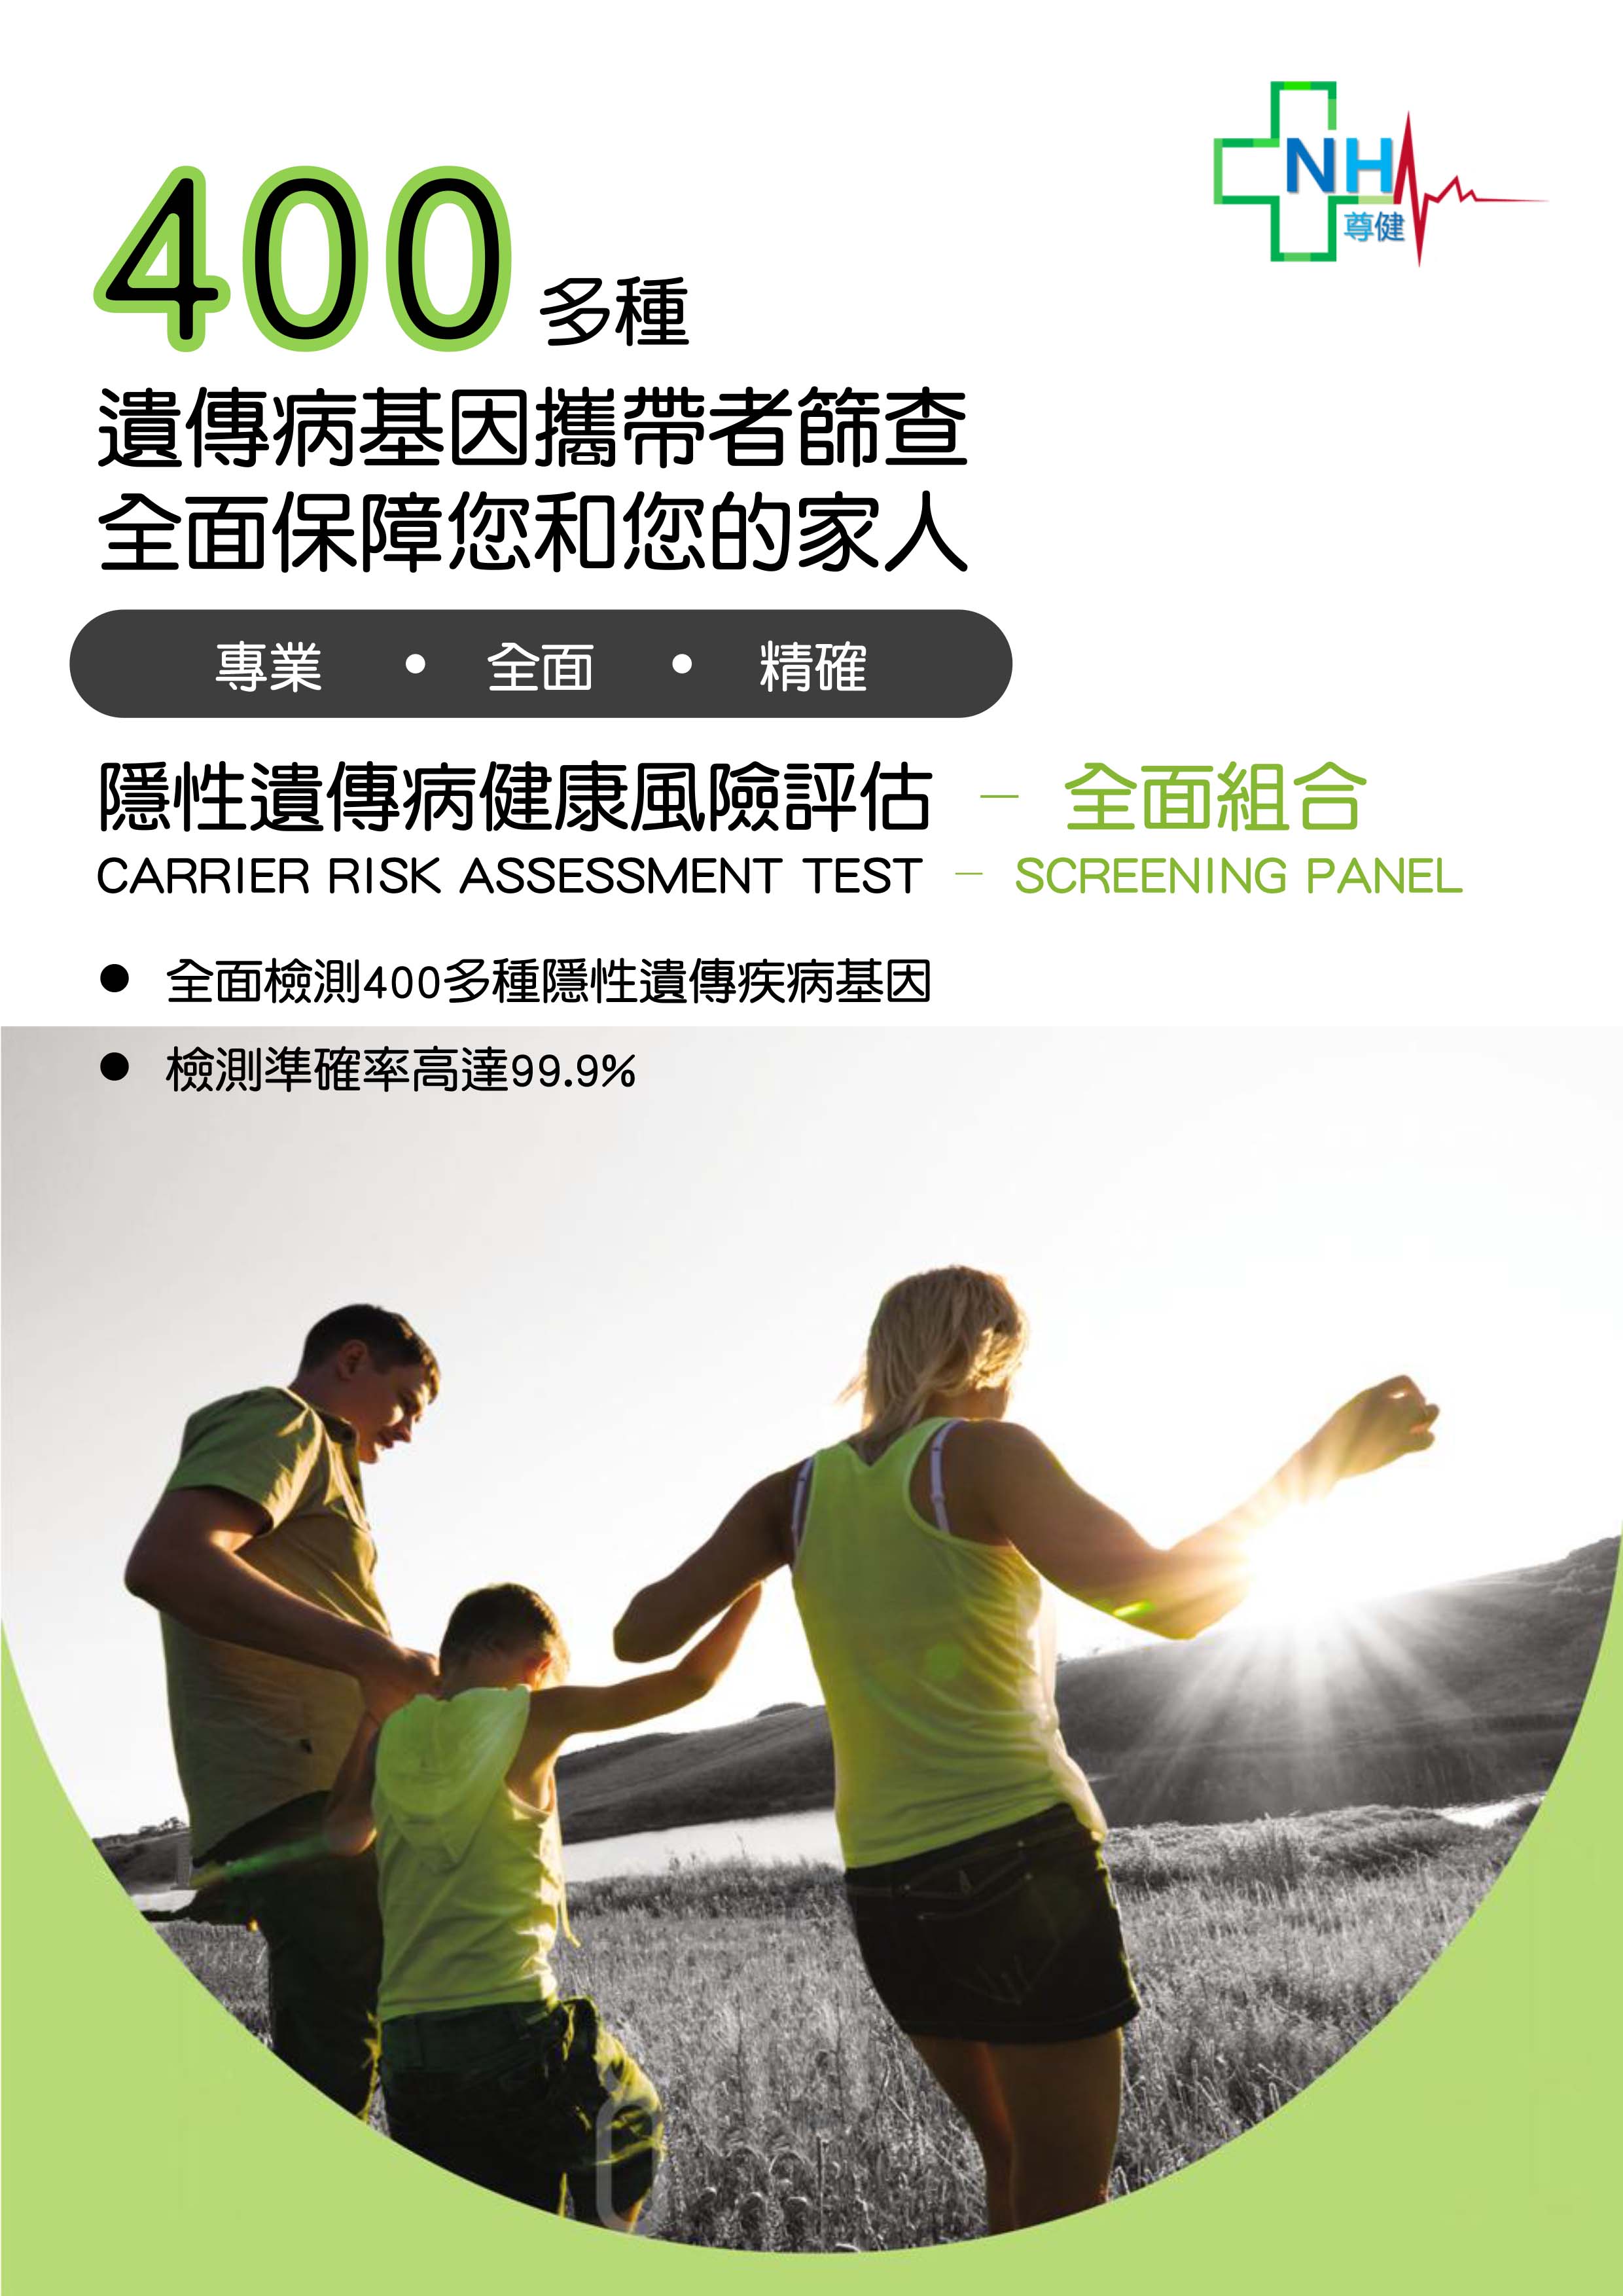 carrier-risk-assessment-test-screening-panel-1.jpg